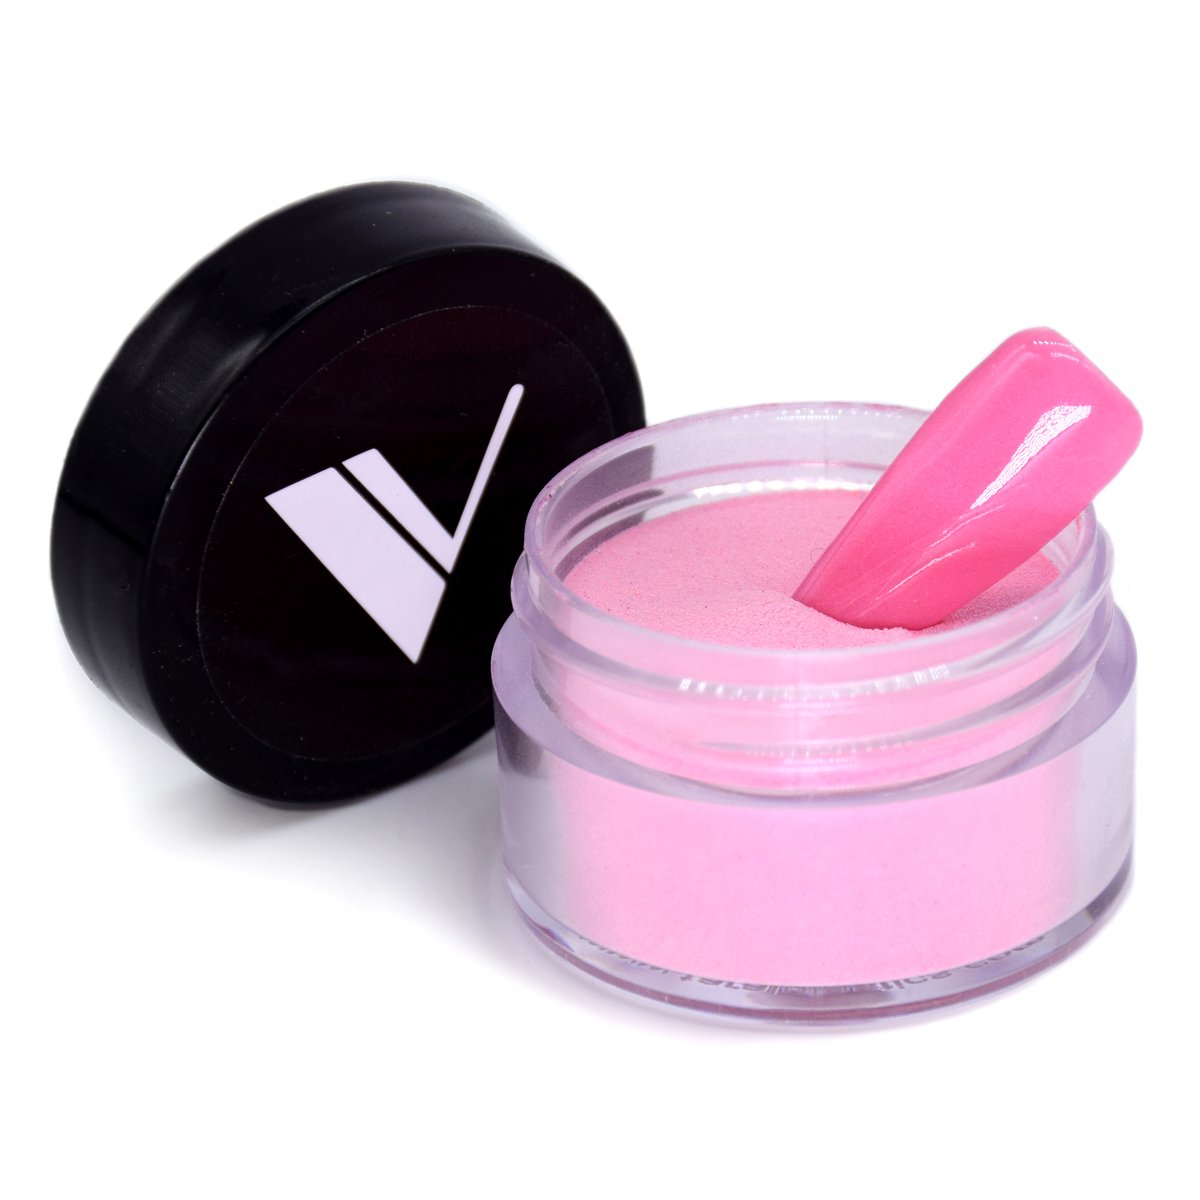 Acrylic Powder - Acrylic System by Valentino Beauty Pure - 162 Seduce Me